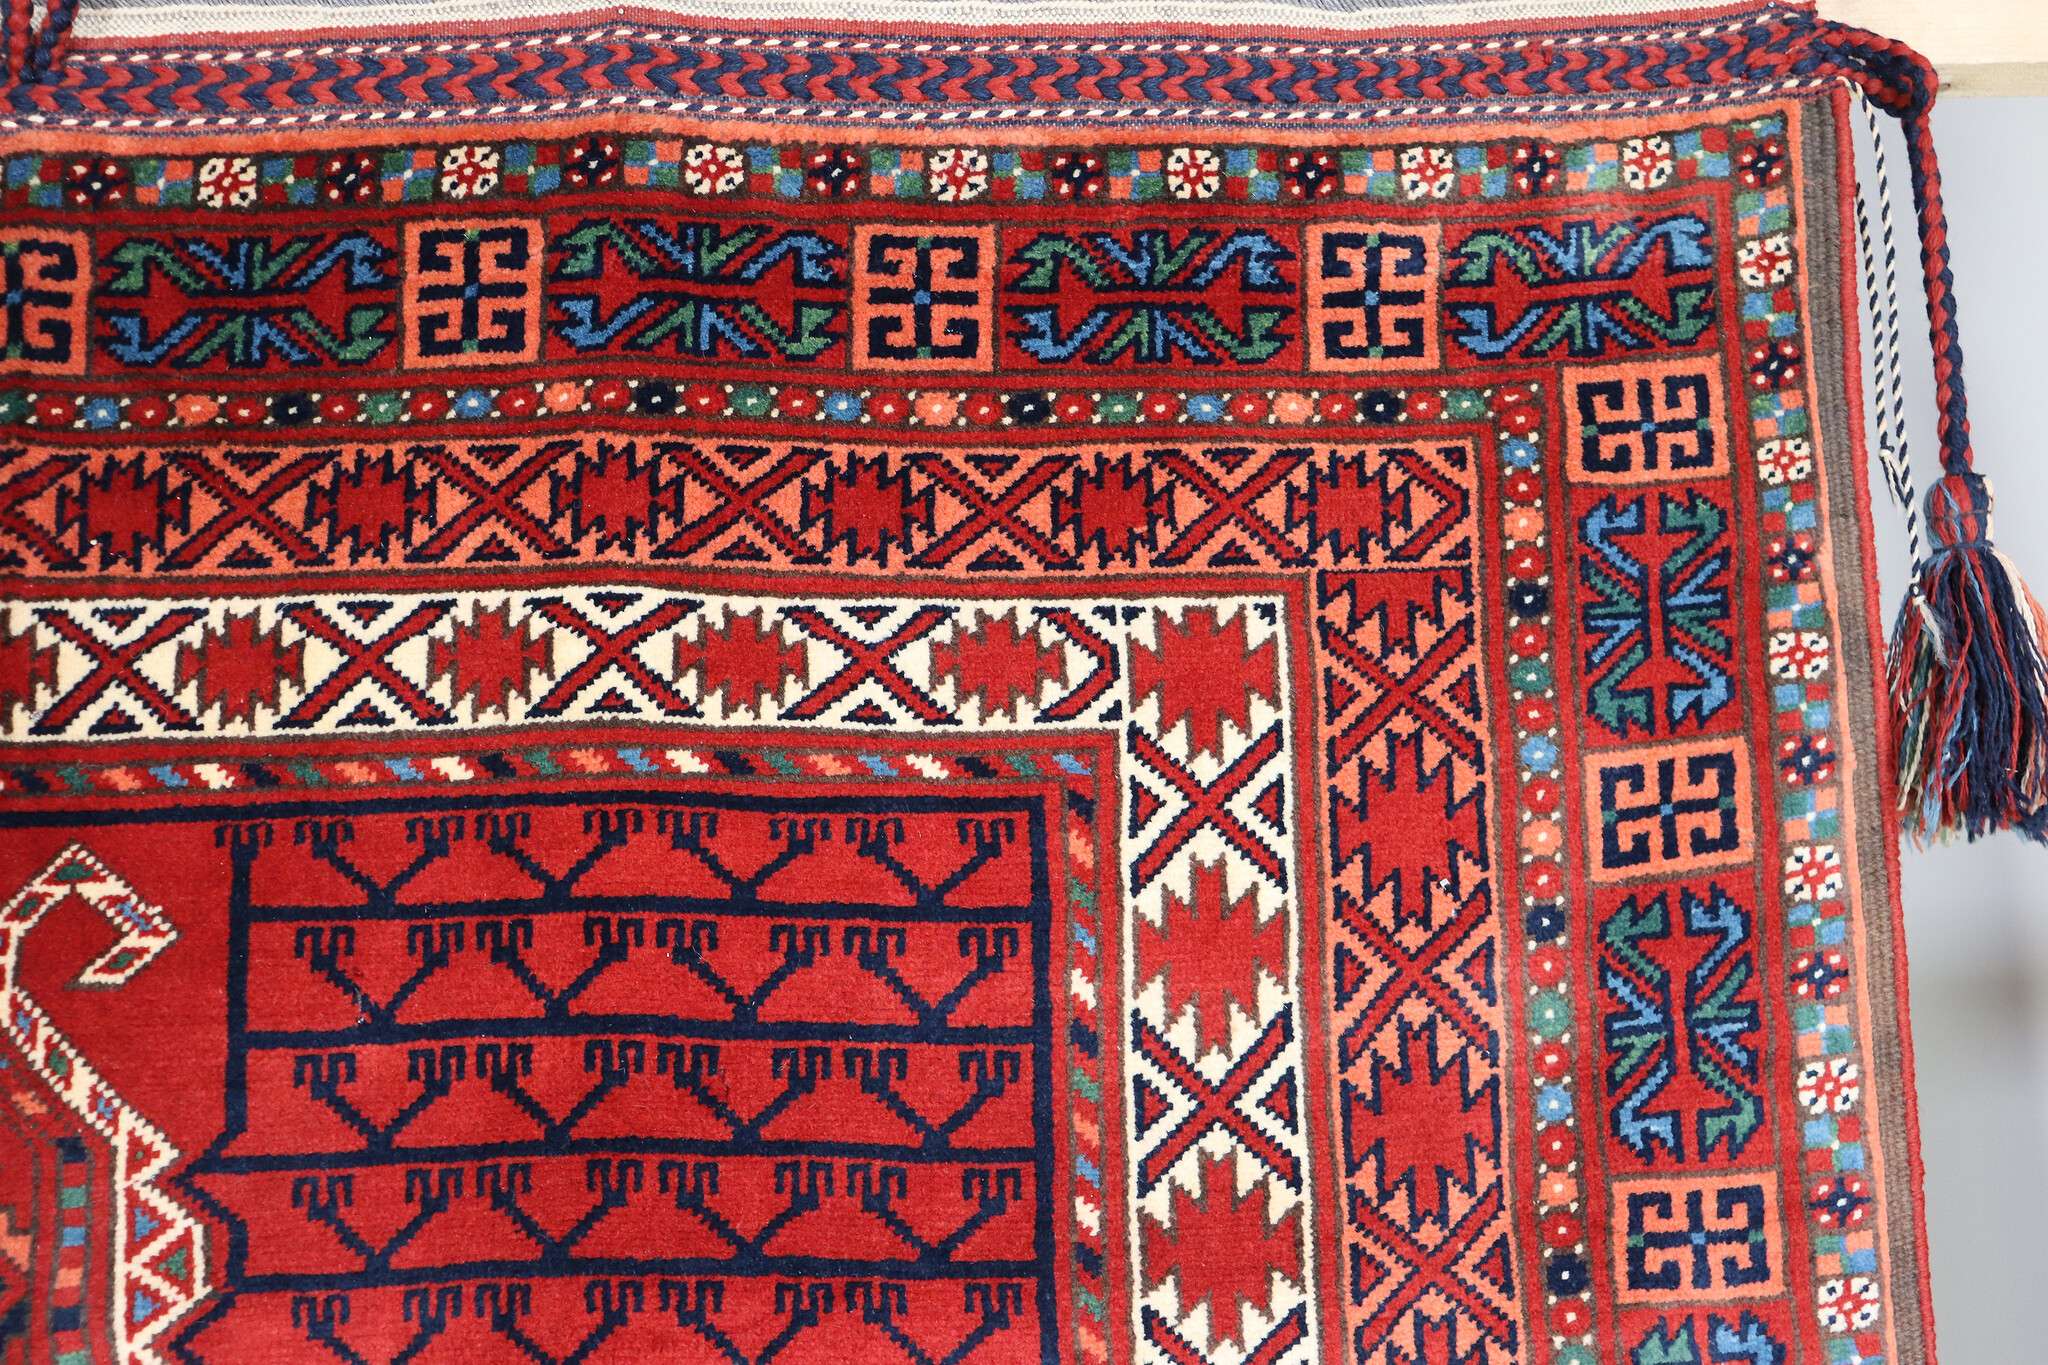 7.2 x 5.2" feet  nomads tekke turkmen Bukhara engsi Hatchlou tent carpet rug from Afghanistan No: 504